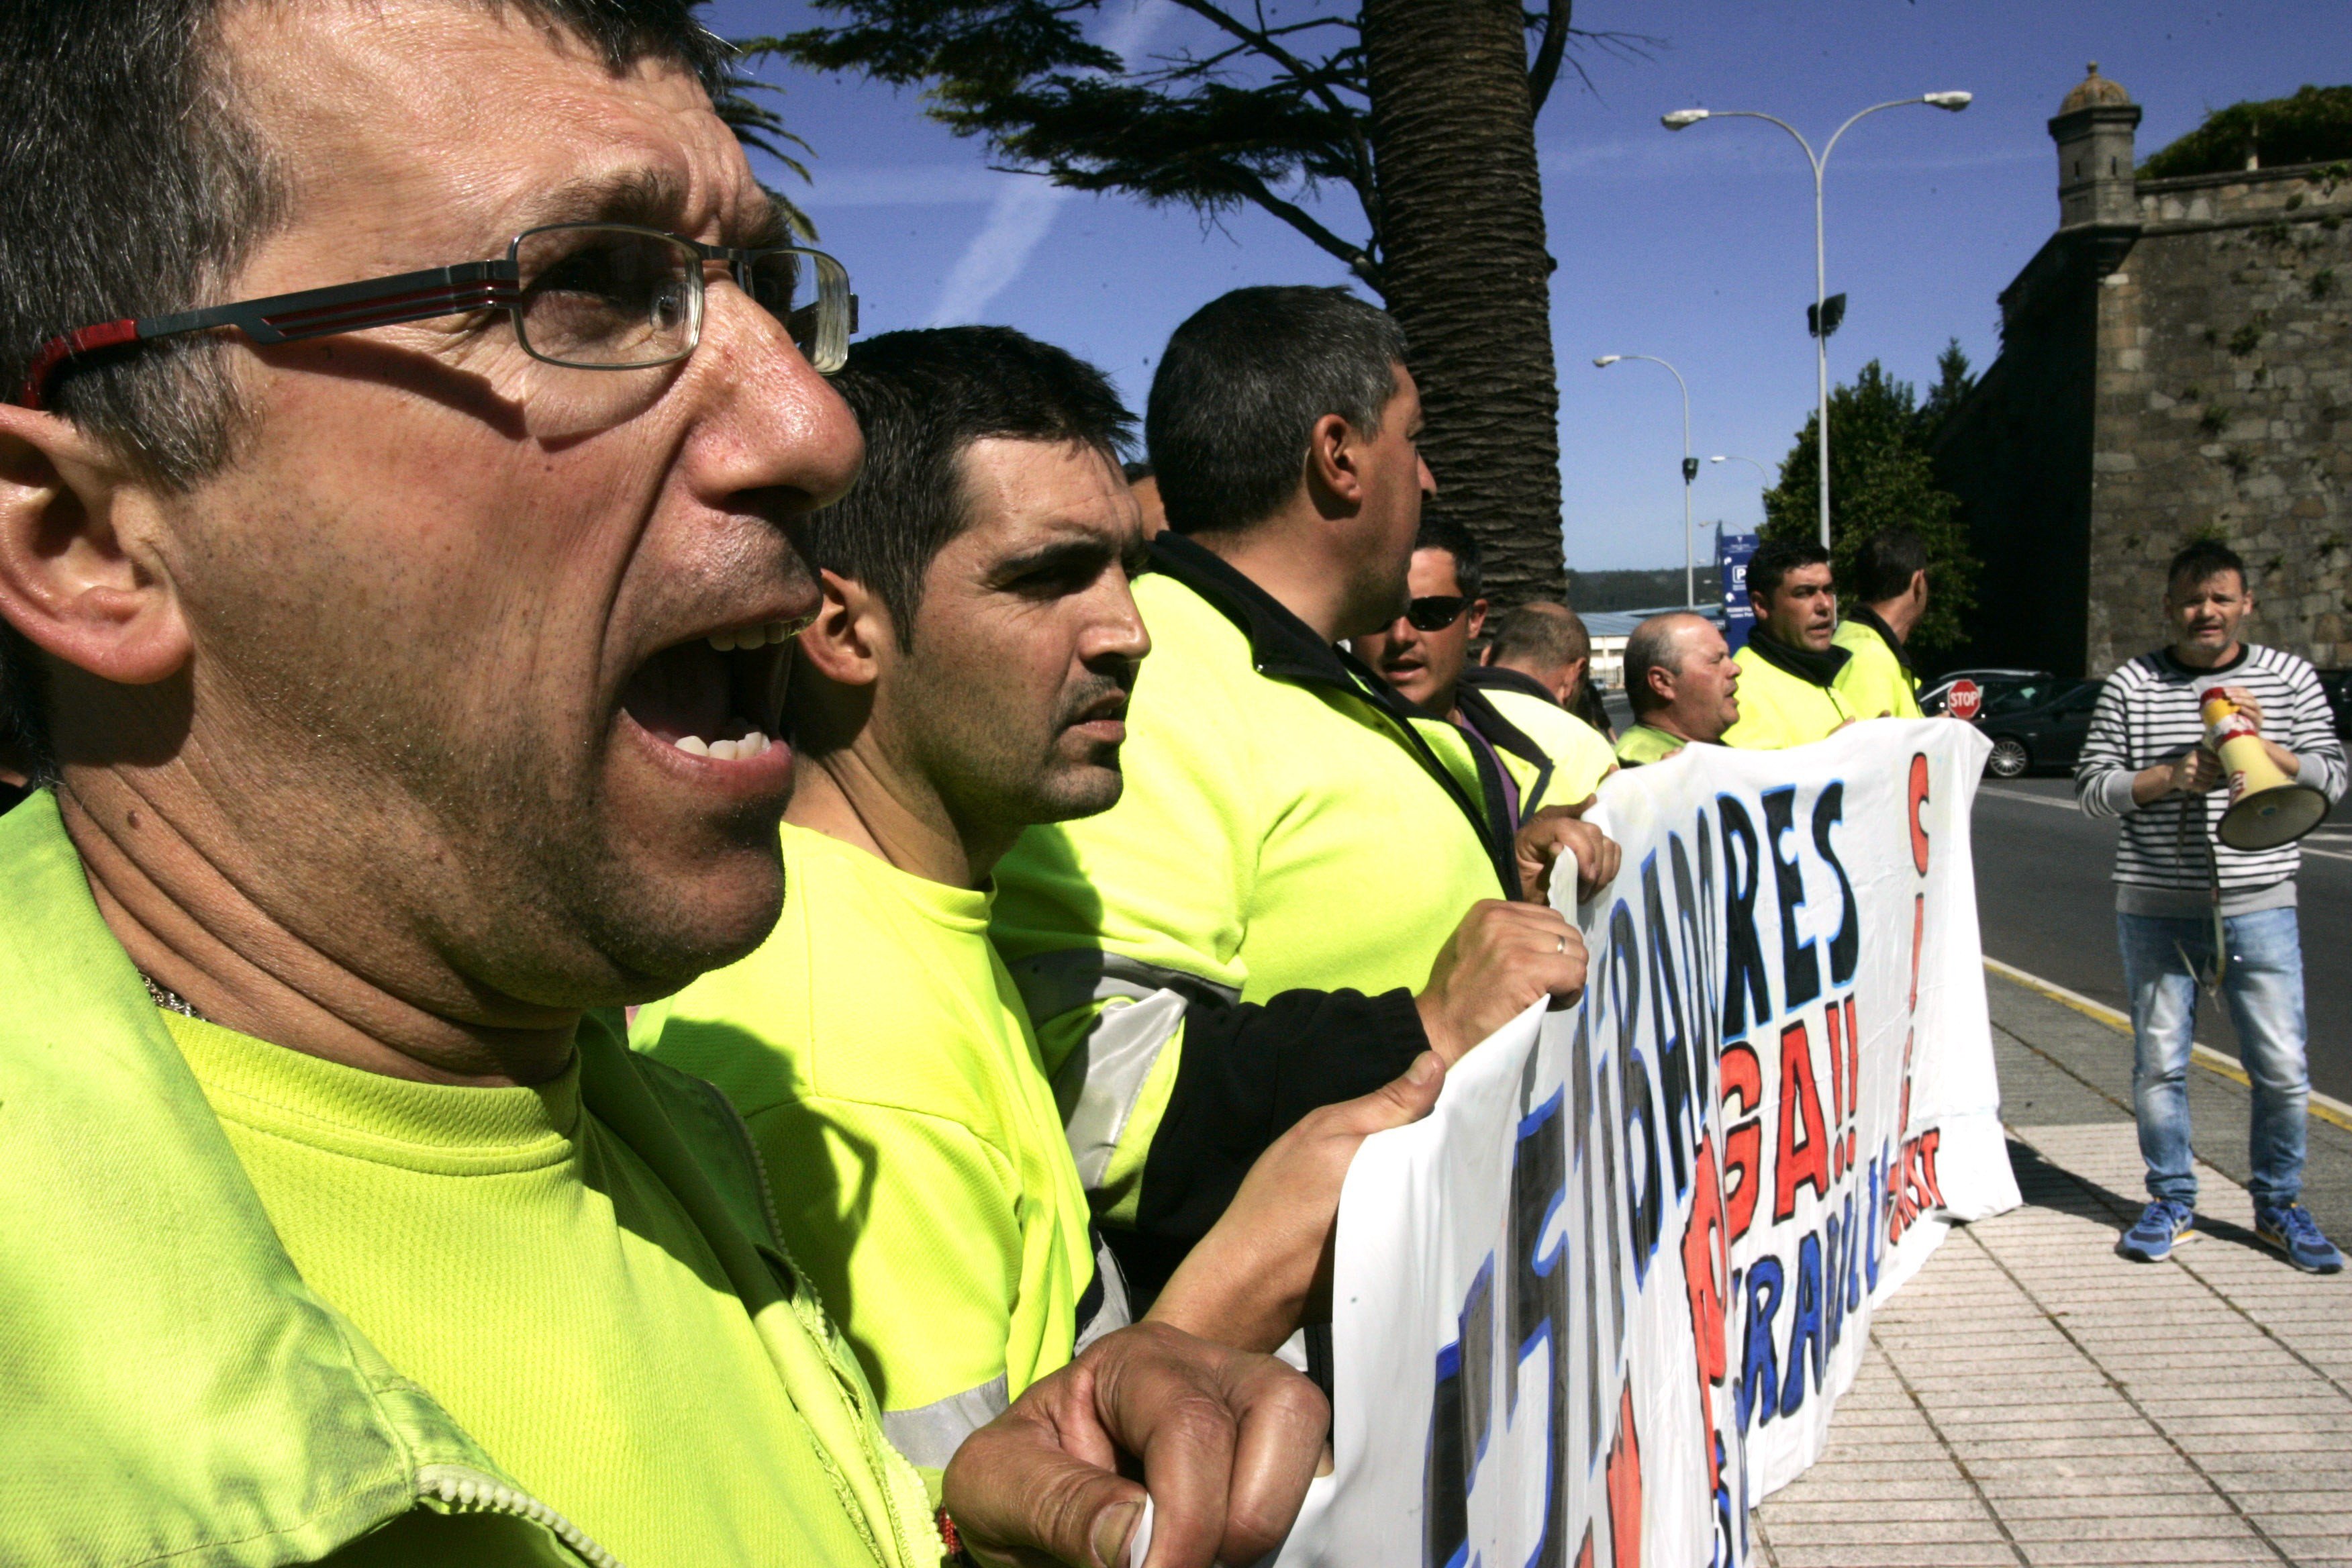 Los estibadores convocan huelga y paros en los puertos entre el 25 y 30 de noviembre